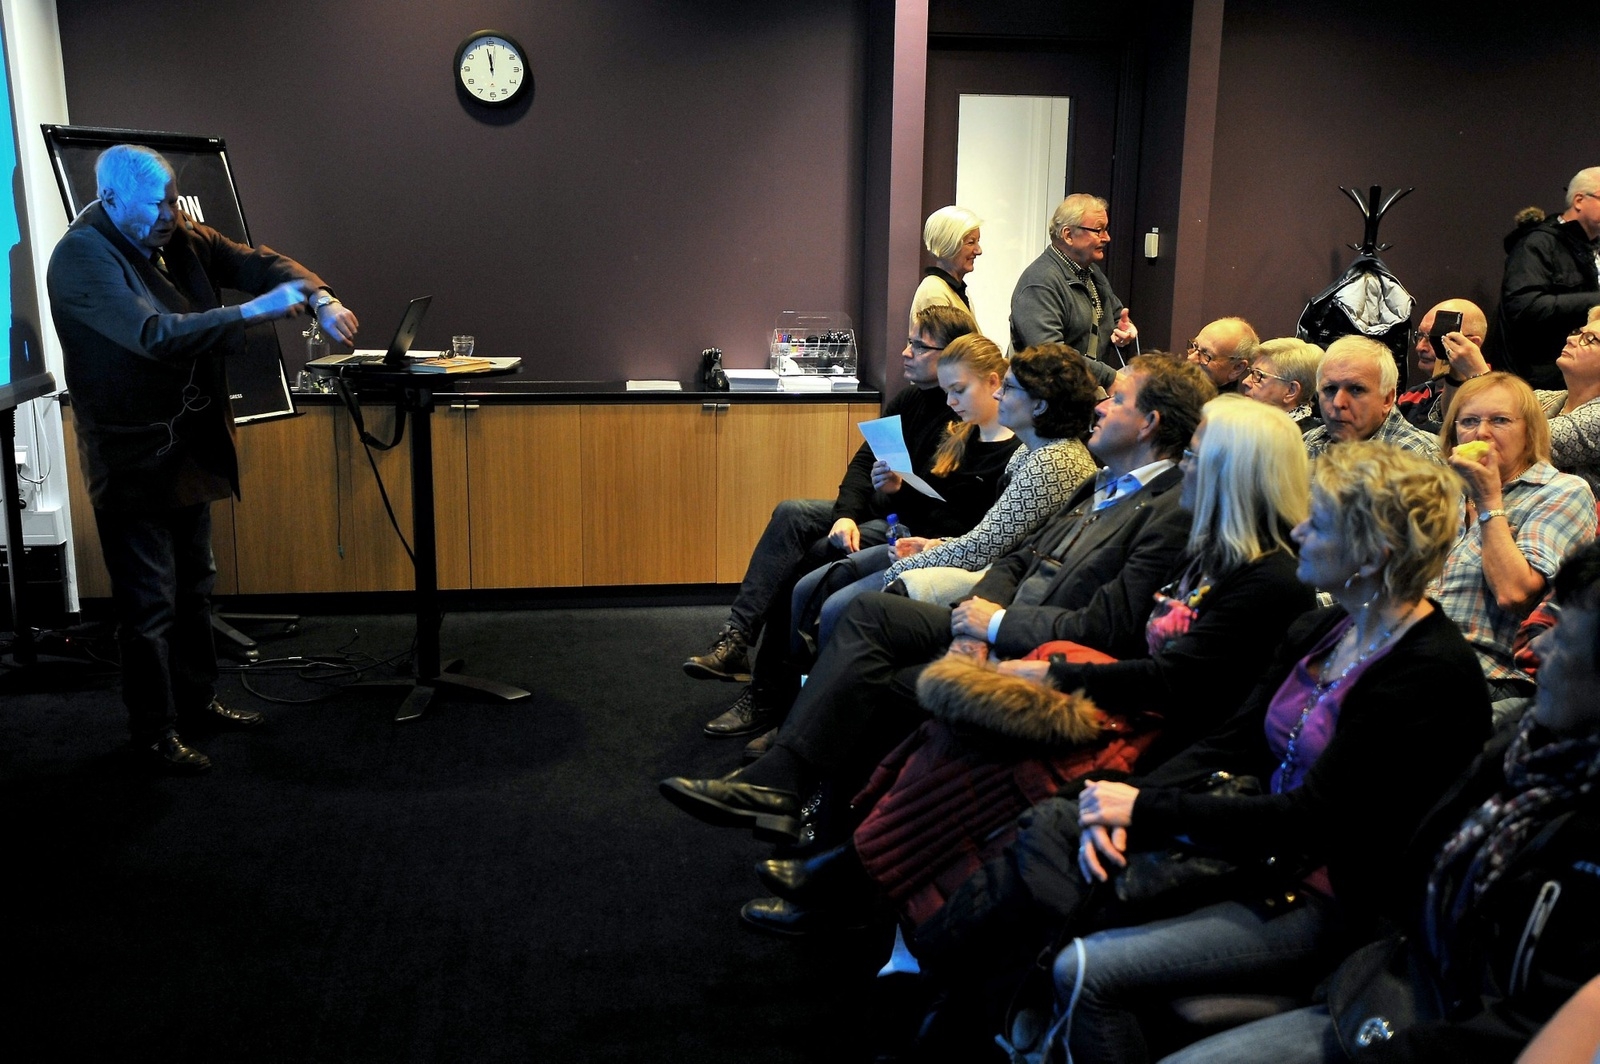 Journalisten Staffan Heimerson drog en anekdot om tid för publiken minuten innan hans föredrag om Sydney började. Foto: Stefan Persson